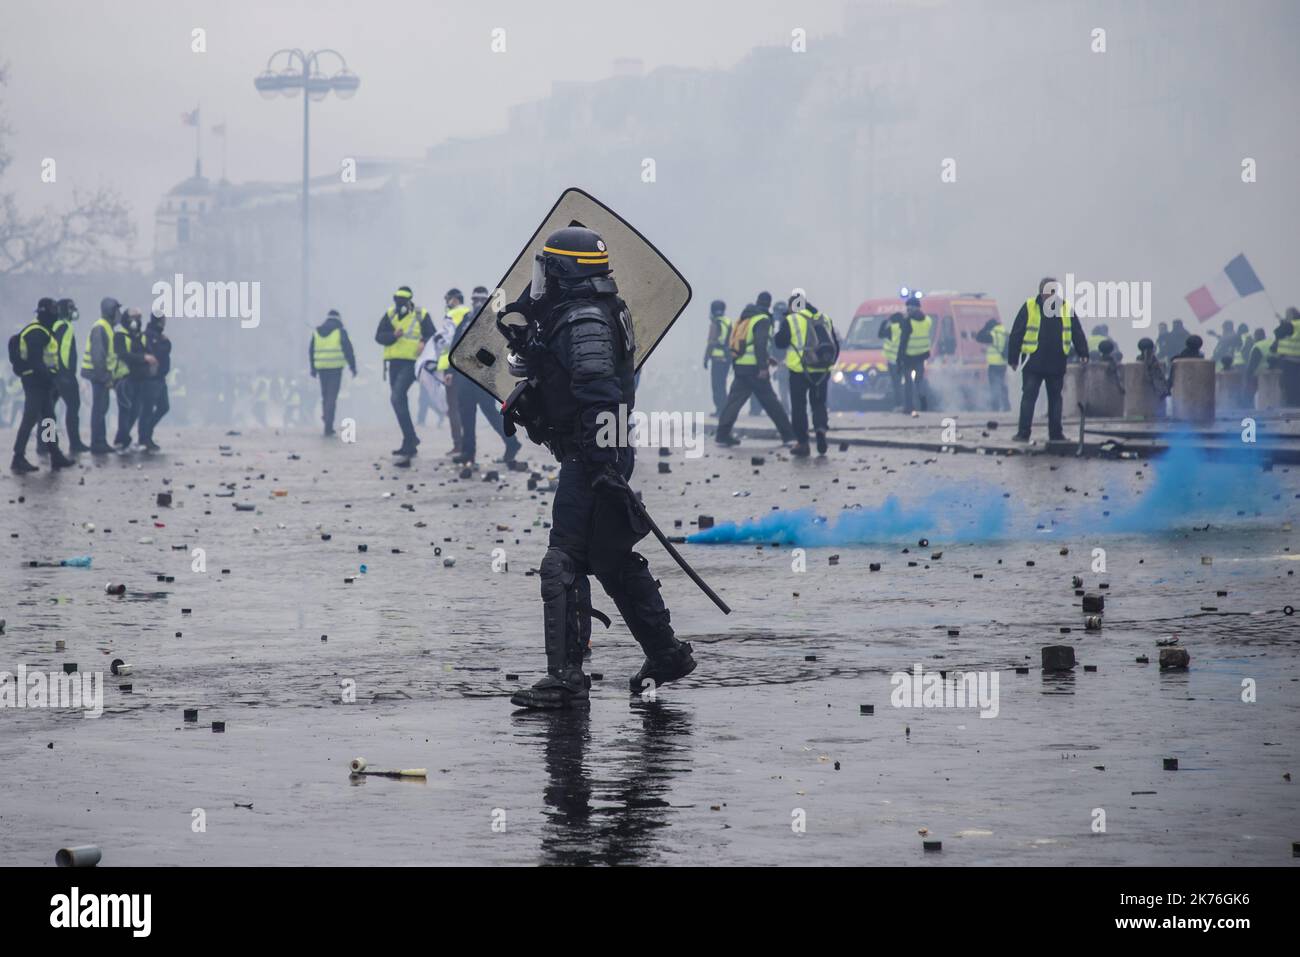 Les manifestants s'opposent à la police anti-émeute lors d'une manifestation « Yellow Vest » à Paris, en France. Le troisième rassemblement « Yellow Vest » (gilets jaunes) à Paris au sujet de l'augmentation des taxes sur le carburant et du leadership au sein du gouvernement a aujourd'hui provoqué plus de 260 arrestations dans la ville, faisant état de blessures aux manifestants et aux forces de sécurité dues à des violences qui ont irruiné suite aux affrontements Banque D'Images